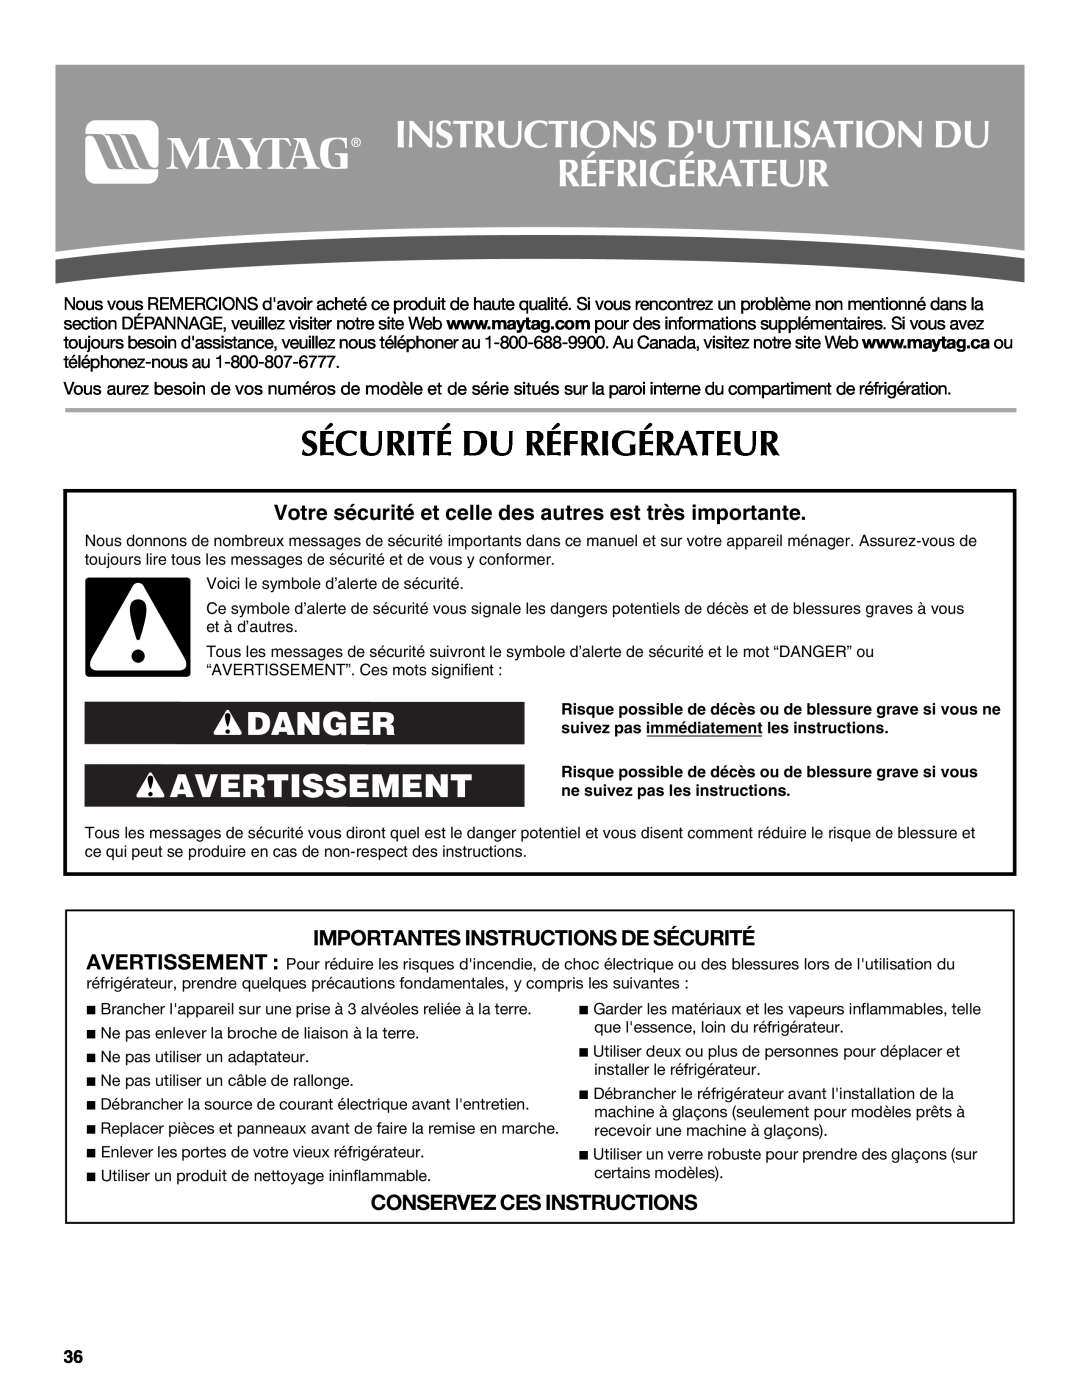 Maytag W10175444A, W10175477A Instructions Dutilisation Du Réfrigérateur, Sécurité Du Réfrigérateur, Danger Avertissement 